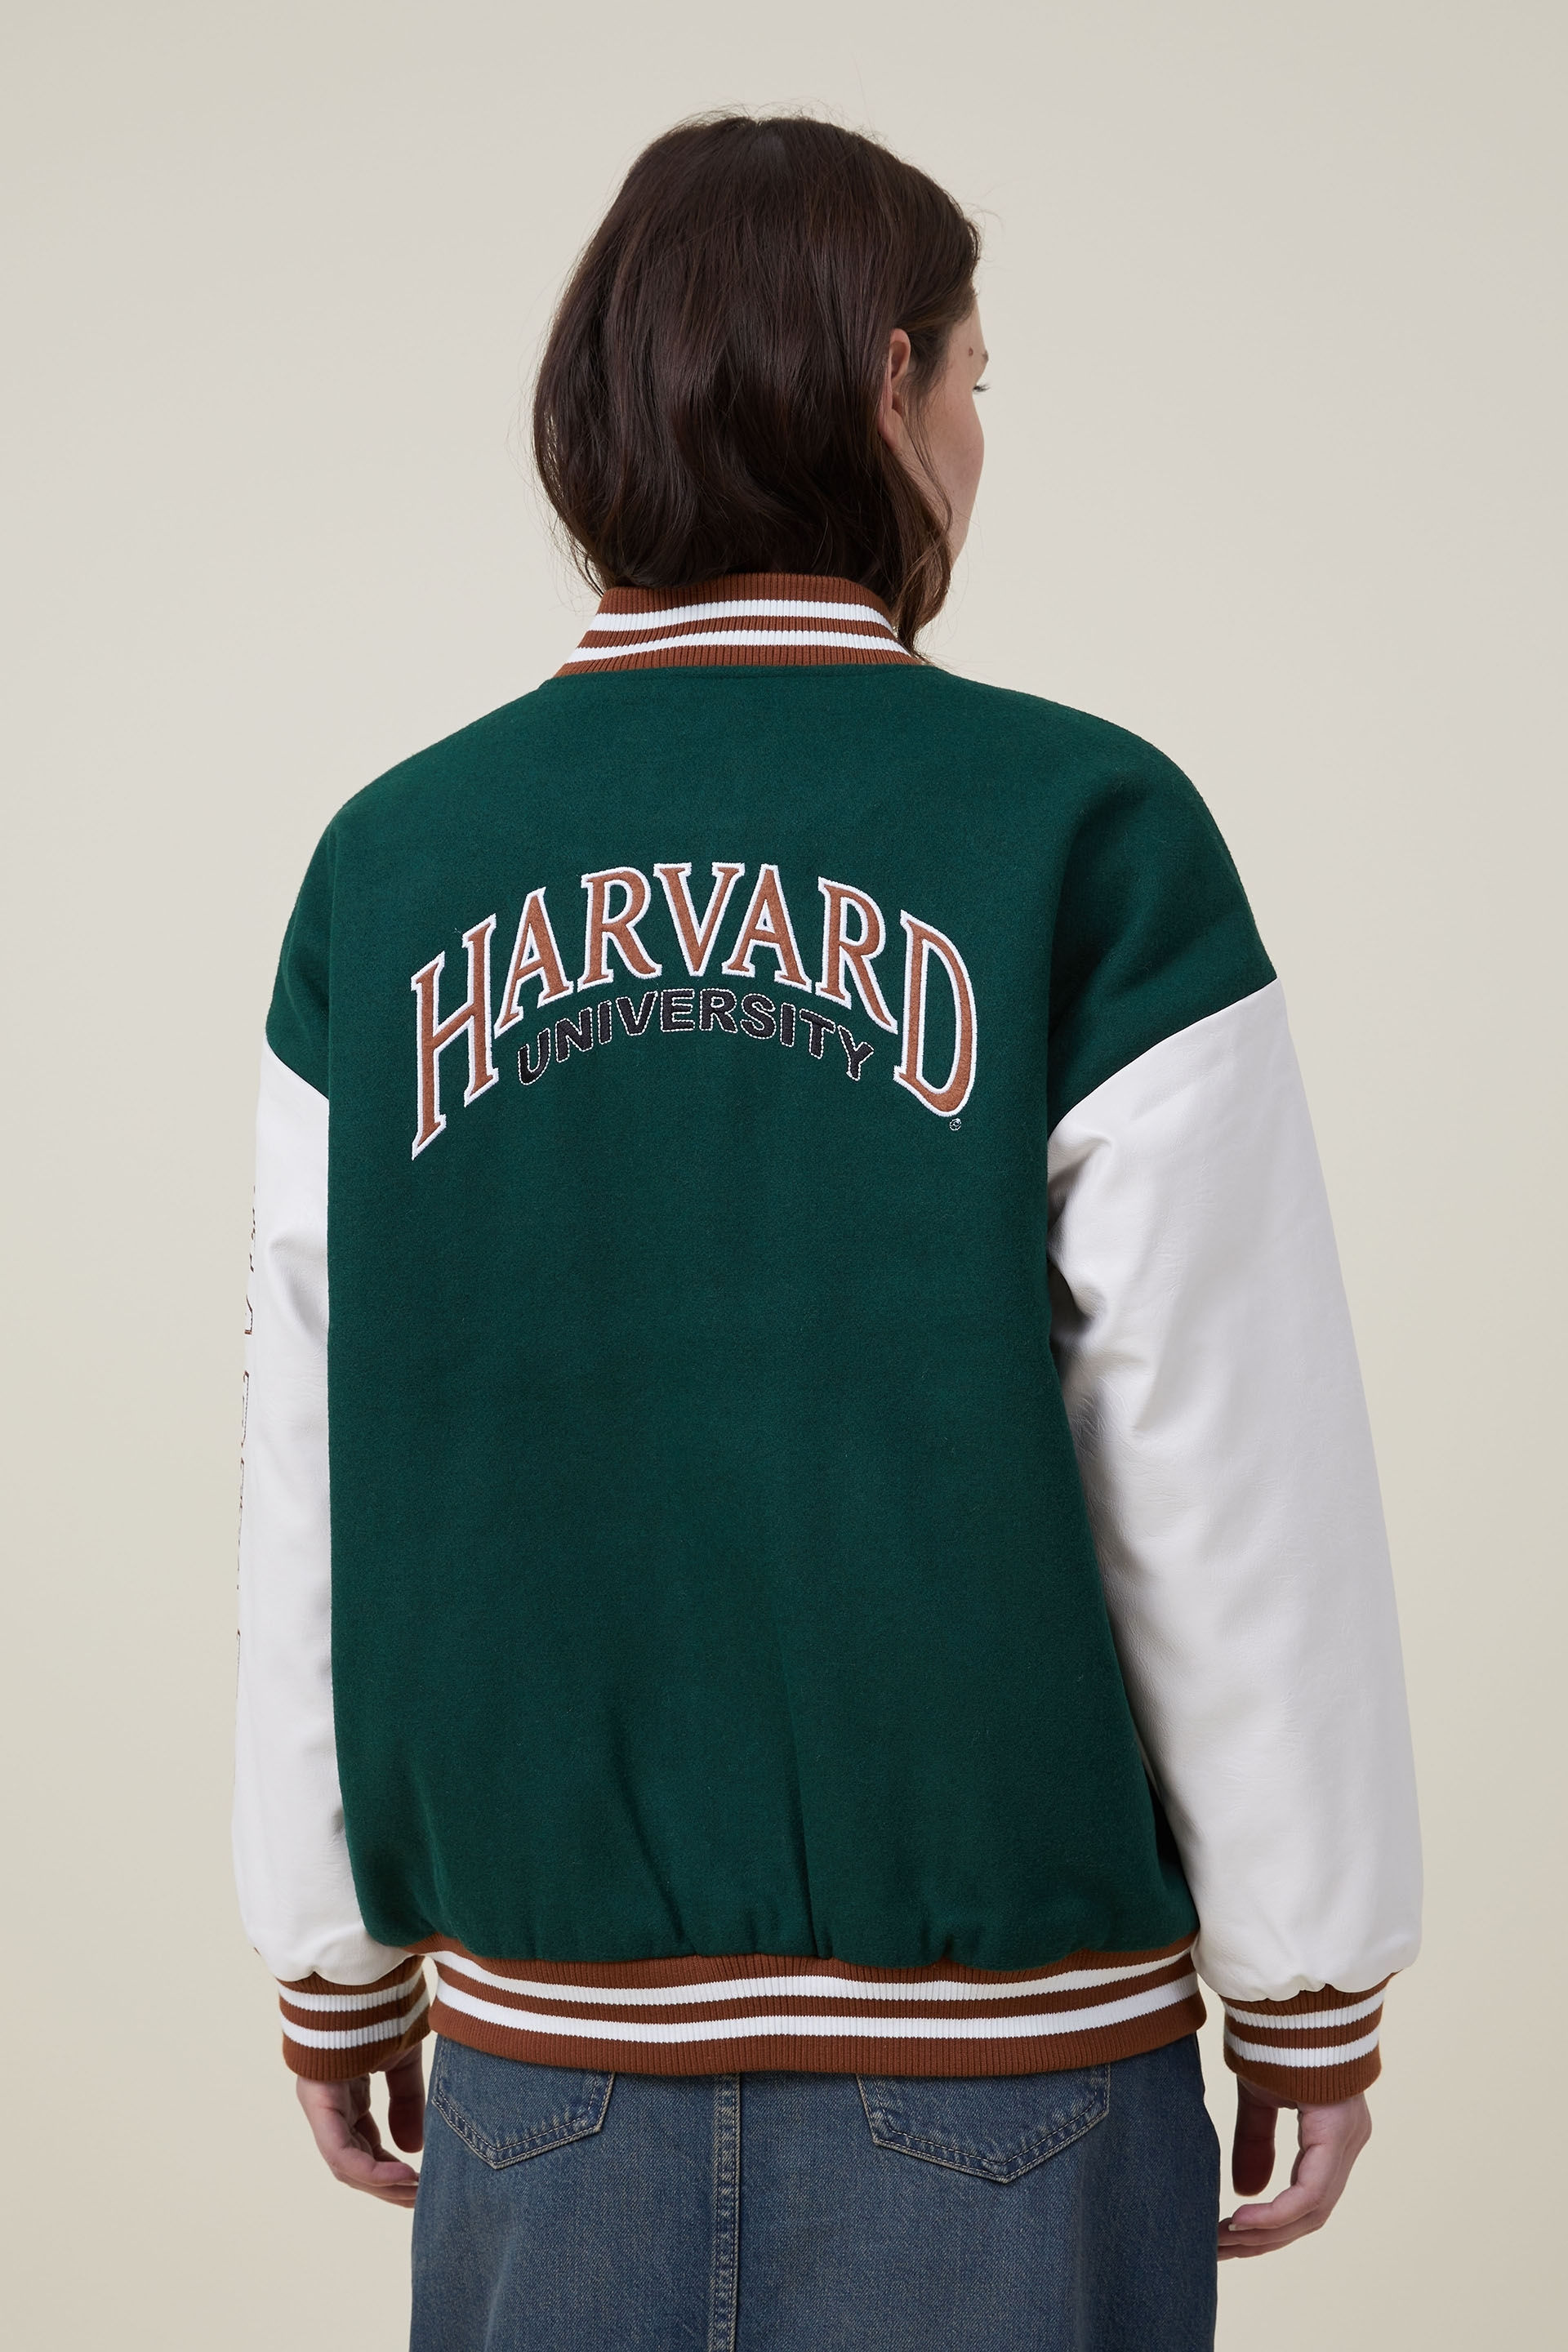 Harvard Harvard x Varsity Jacket x Vintage | Grailed